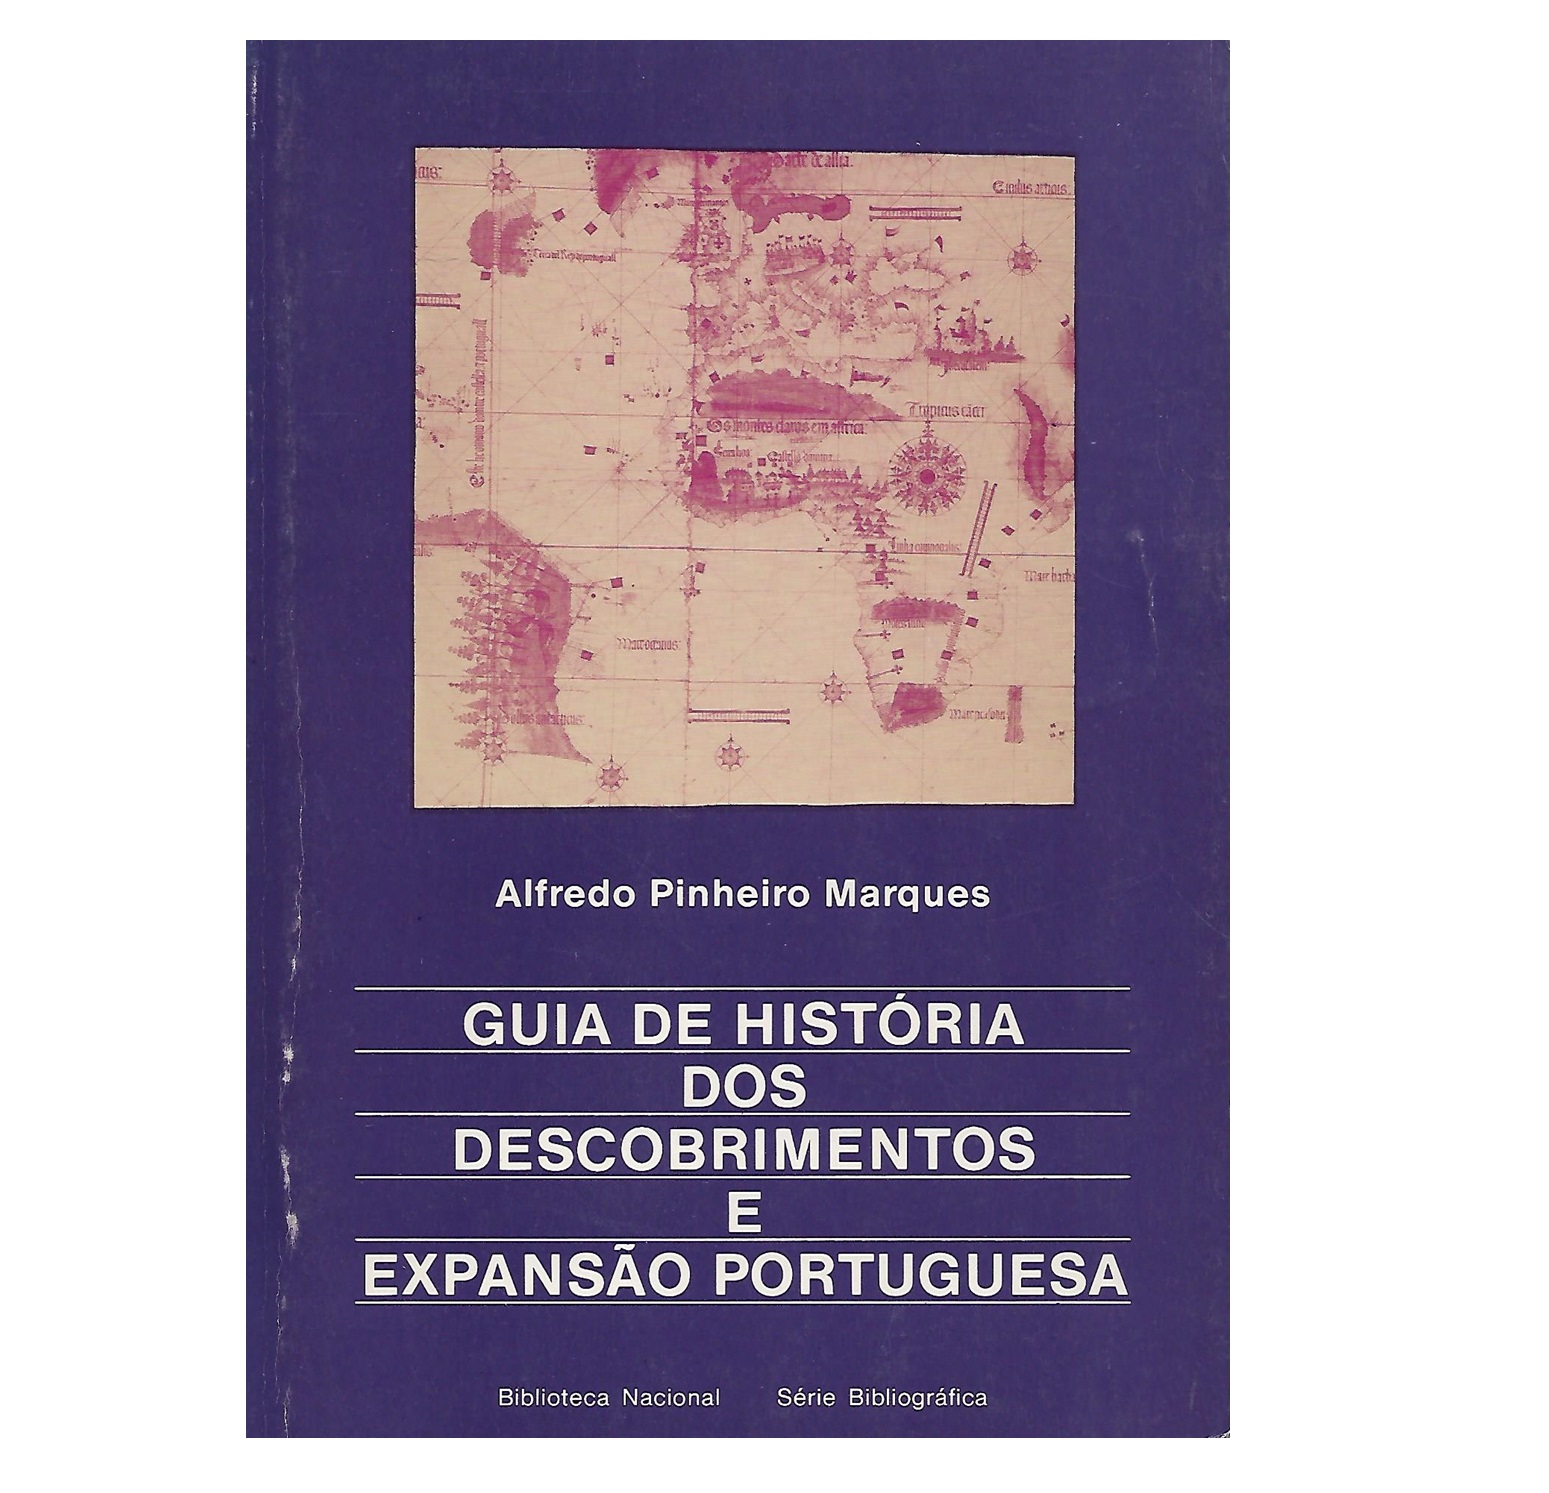  GUIA DE HISTÓRIA DOS DESCOBRIMENTOS E EXPANSÃO PORTUGUESA